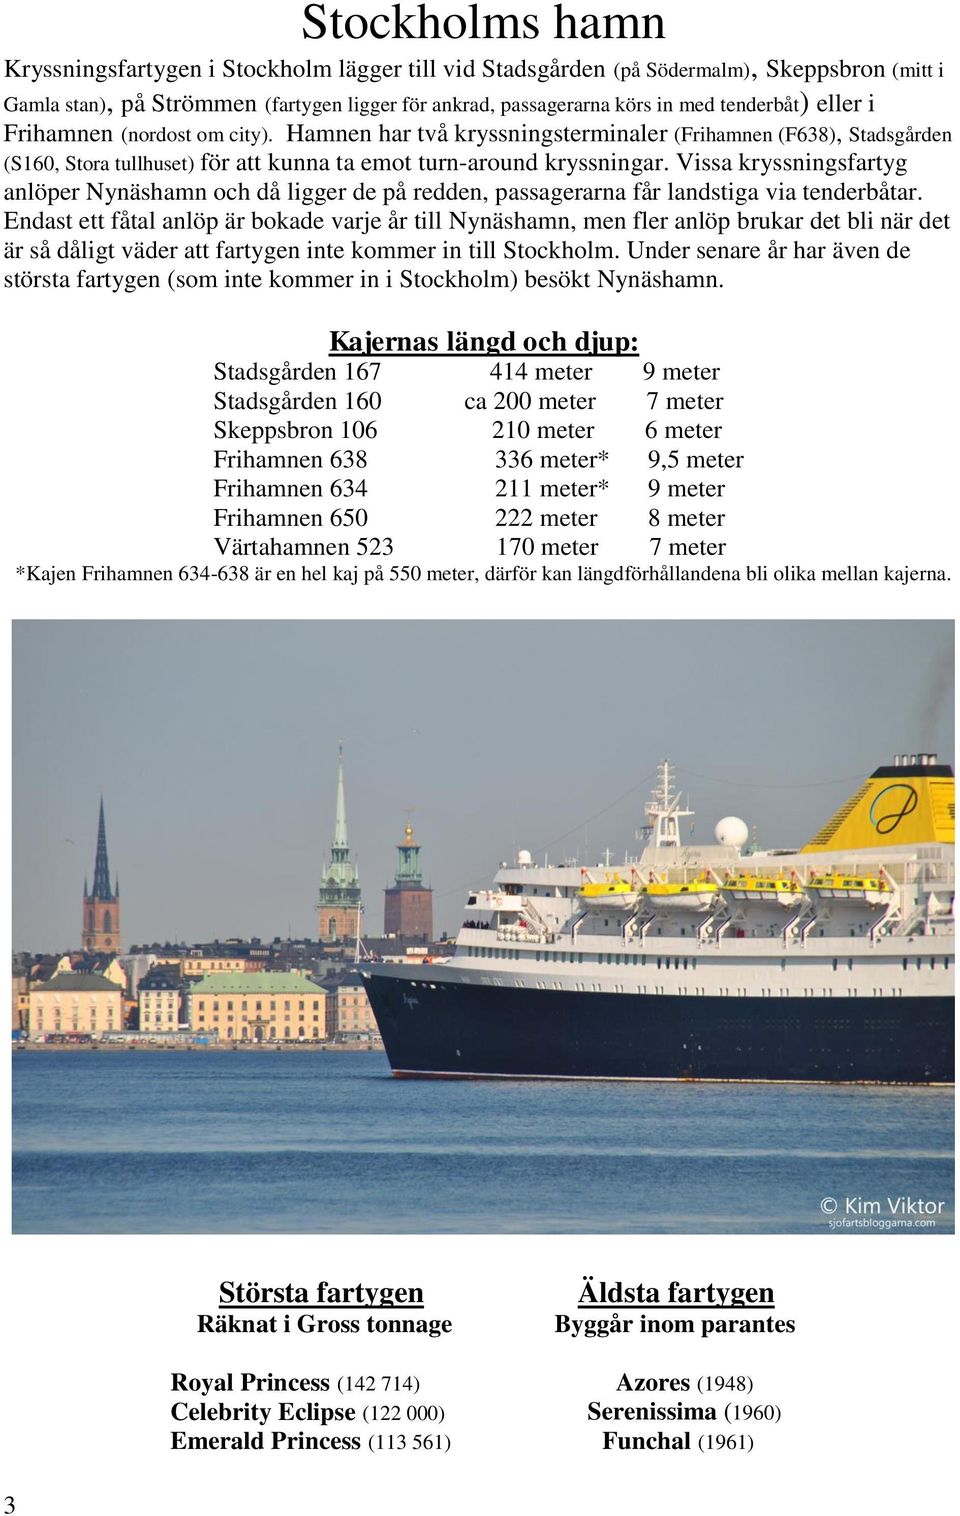 Vissa kryssningsfartyg anlöper Nynäshamn och då ligger de på redden, passagerarna får landstiga via tenderbåtar.